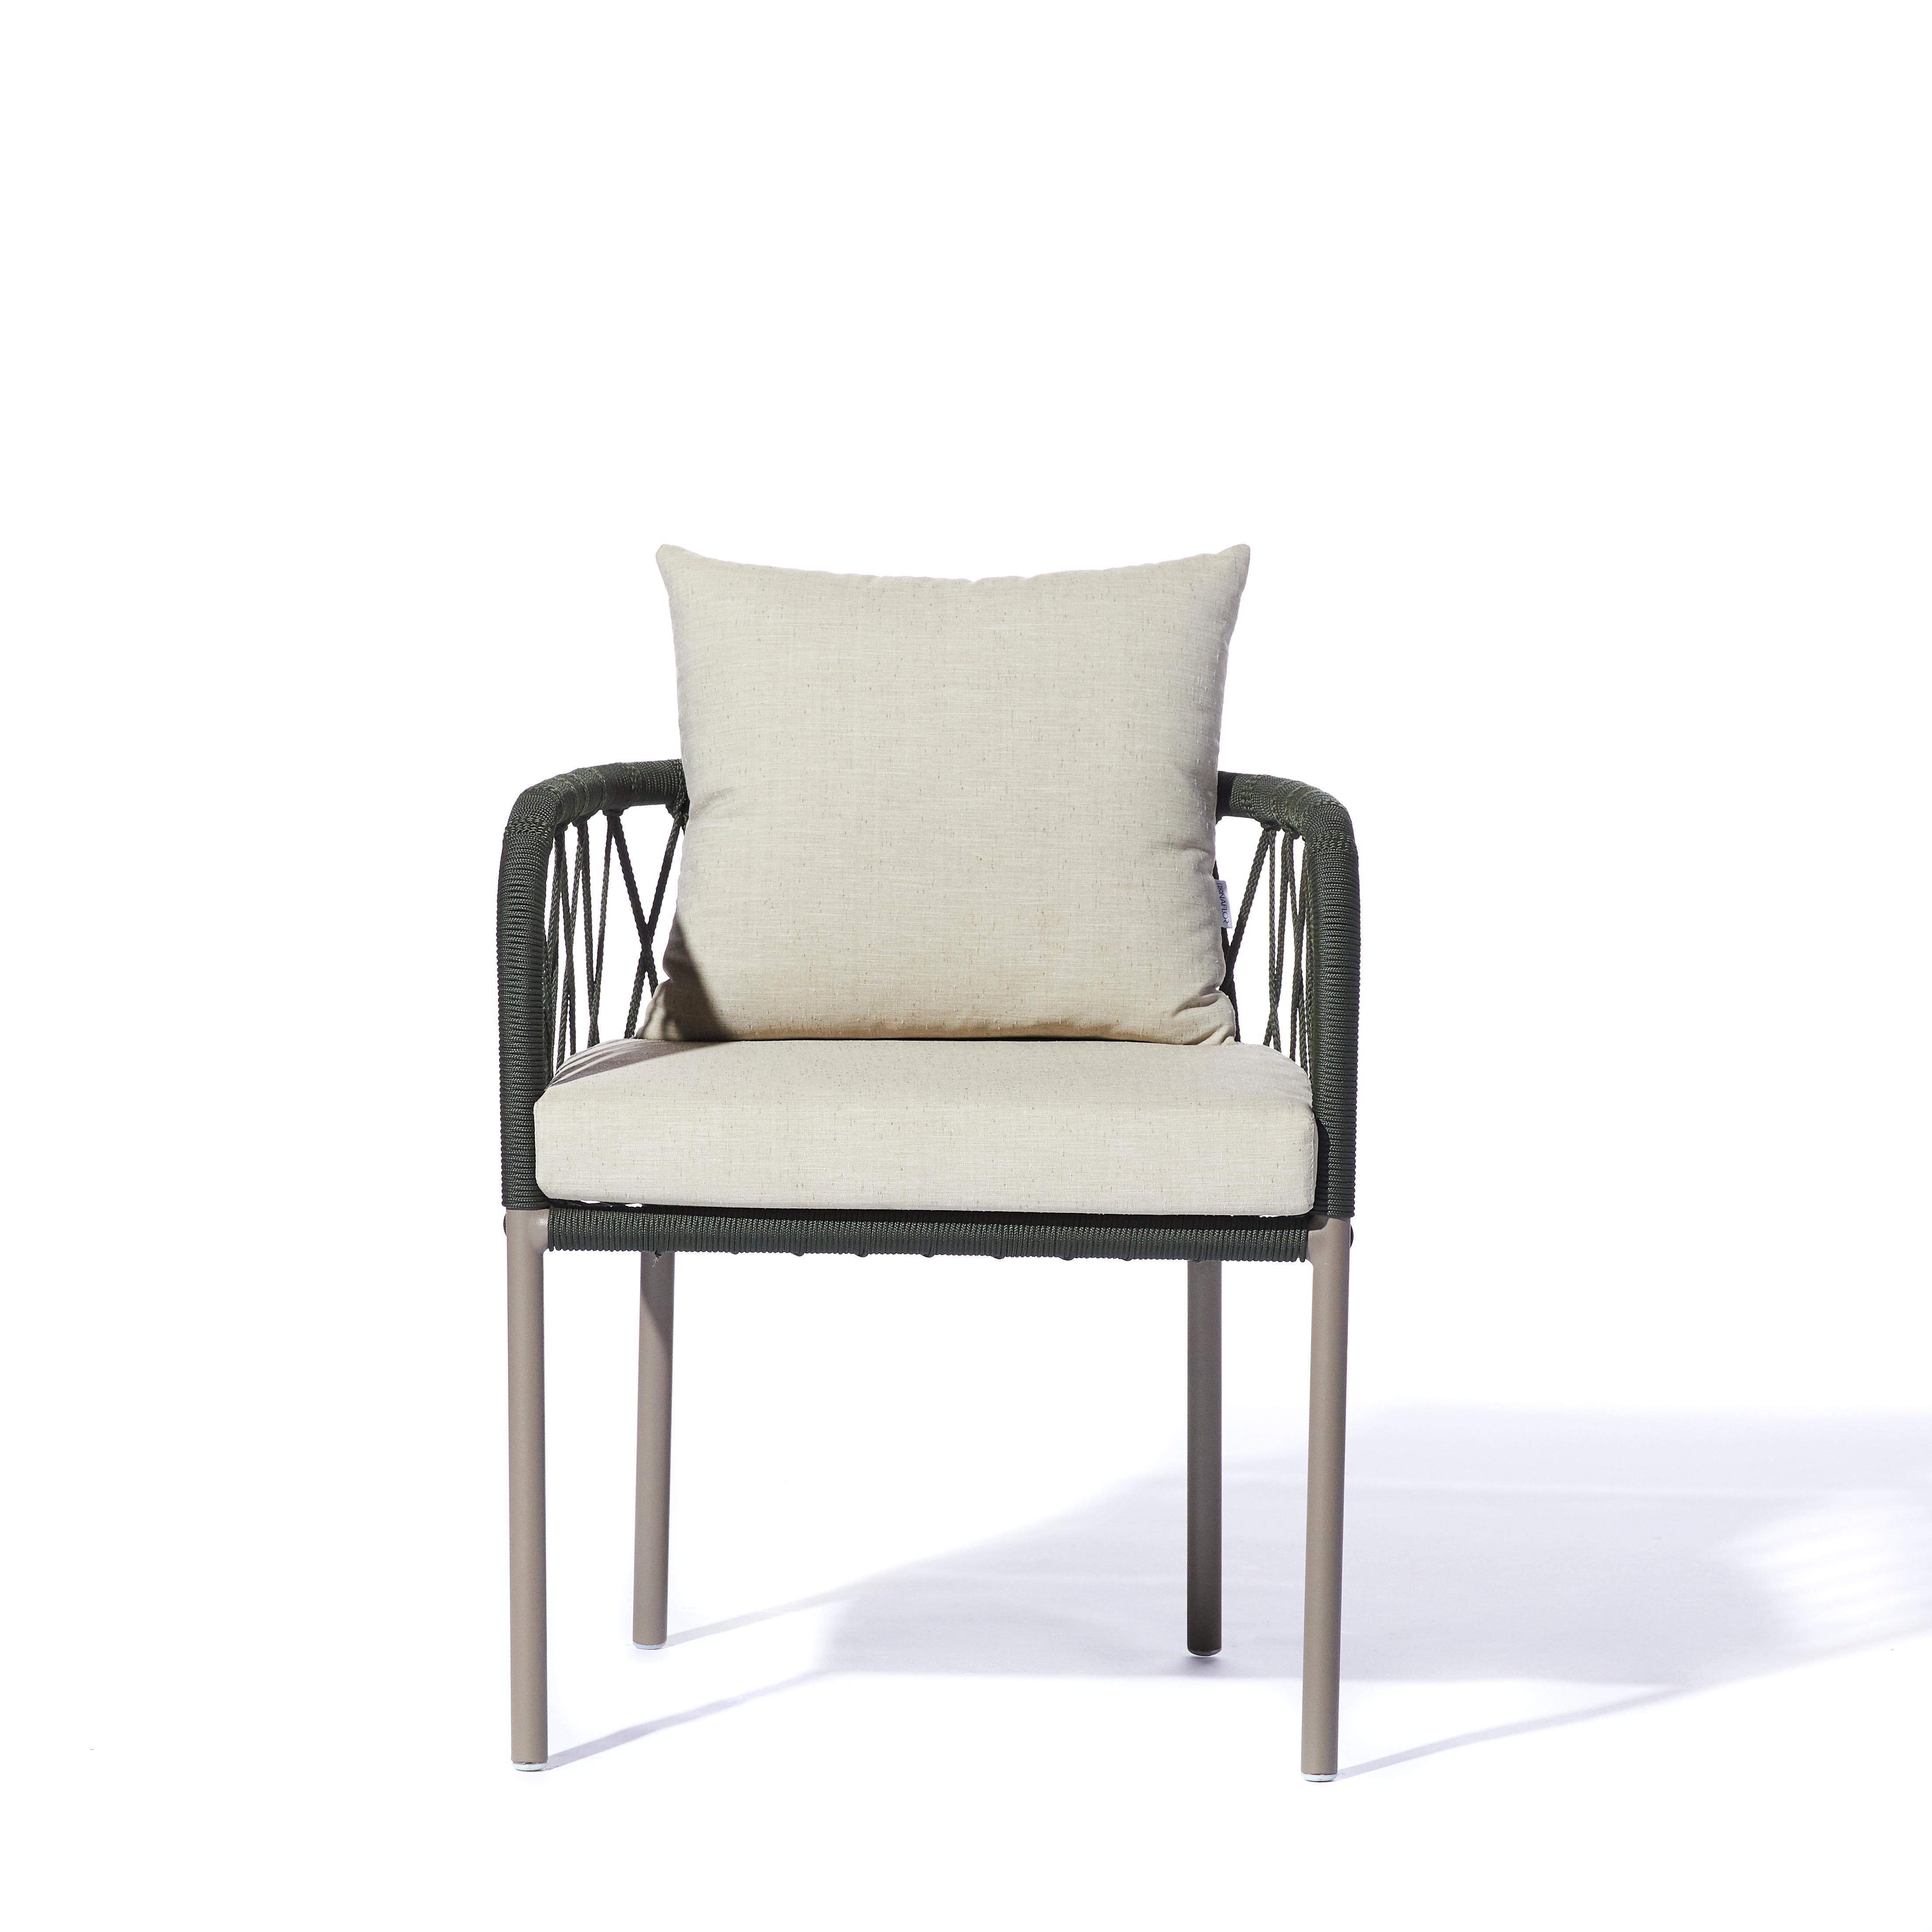 La série Bask est composée d'un canapé, d'un fauteuil, d'une chaise, d'une table centrale, d'une bibliothèque et d'une table d'angle. Développée spécialement pour les espaces extérieurs et les balcons, la série a eu pour point de départ le dessin de